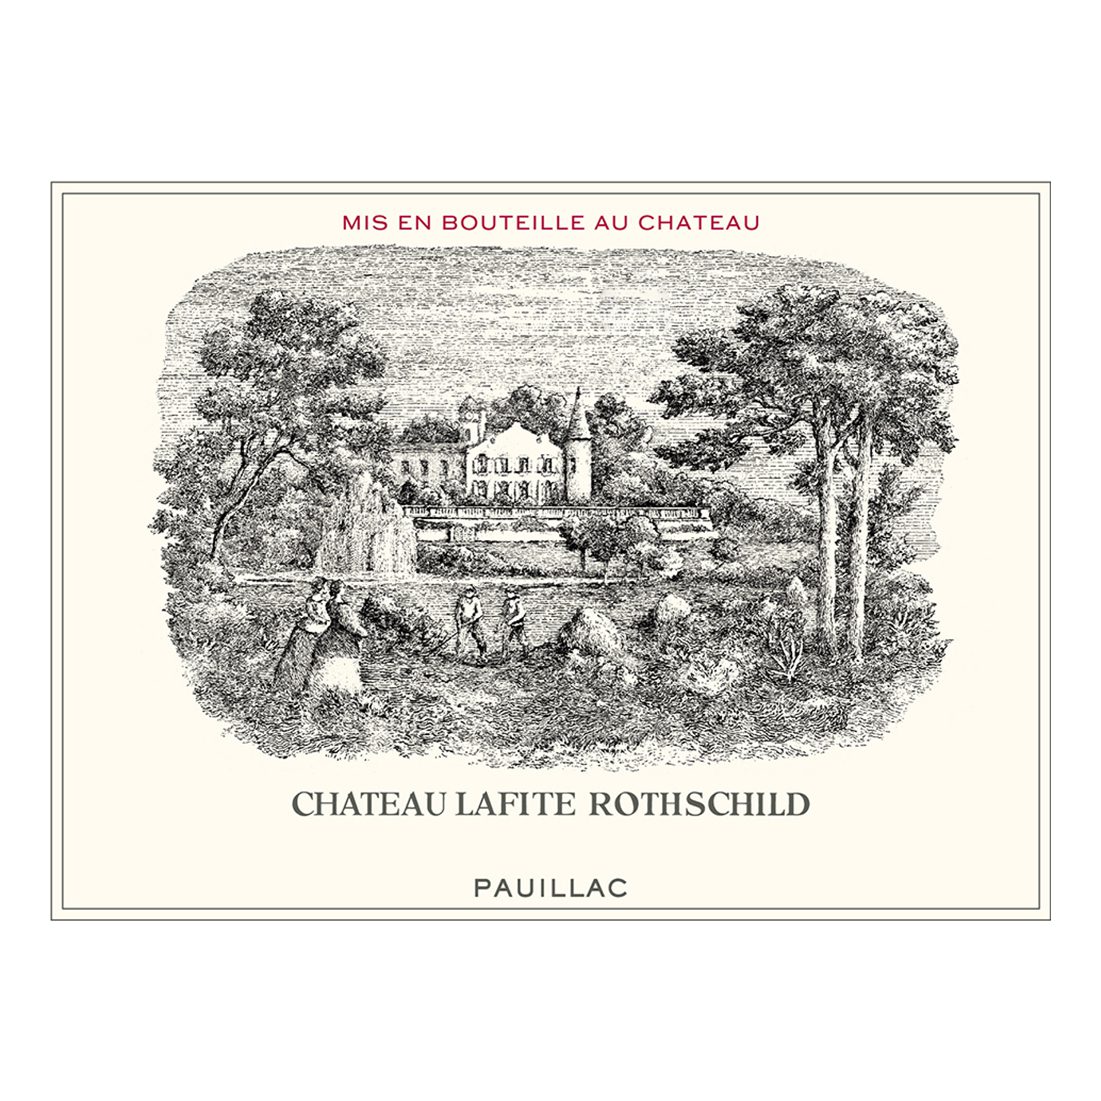 Chateau Lafite Rothschild Premier Cru Classe, Pauillac